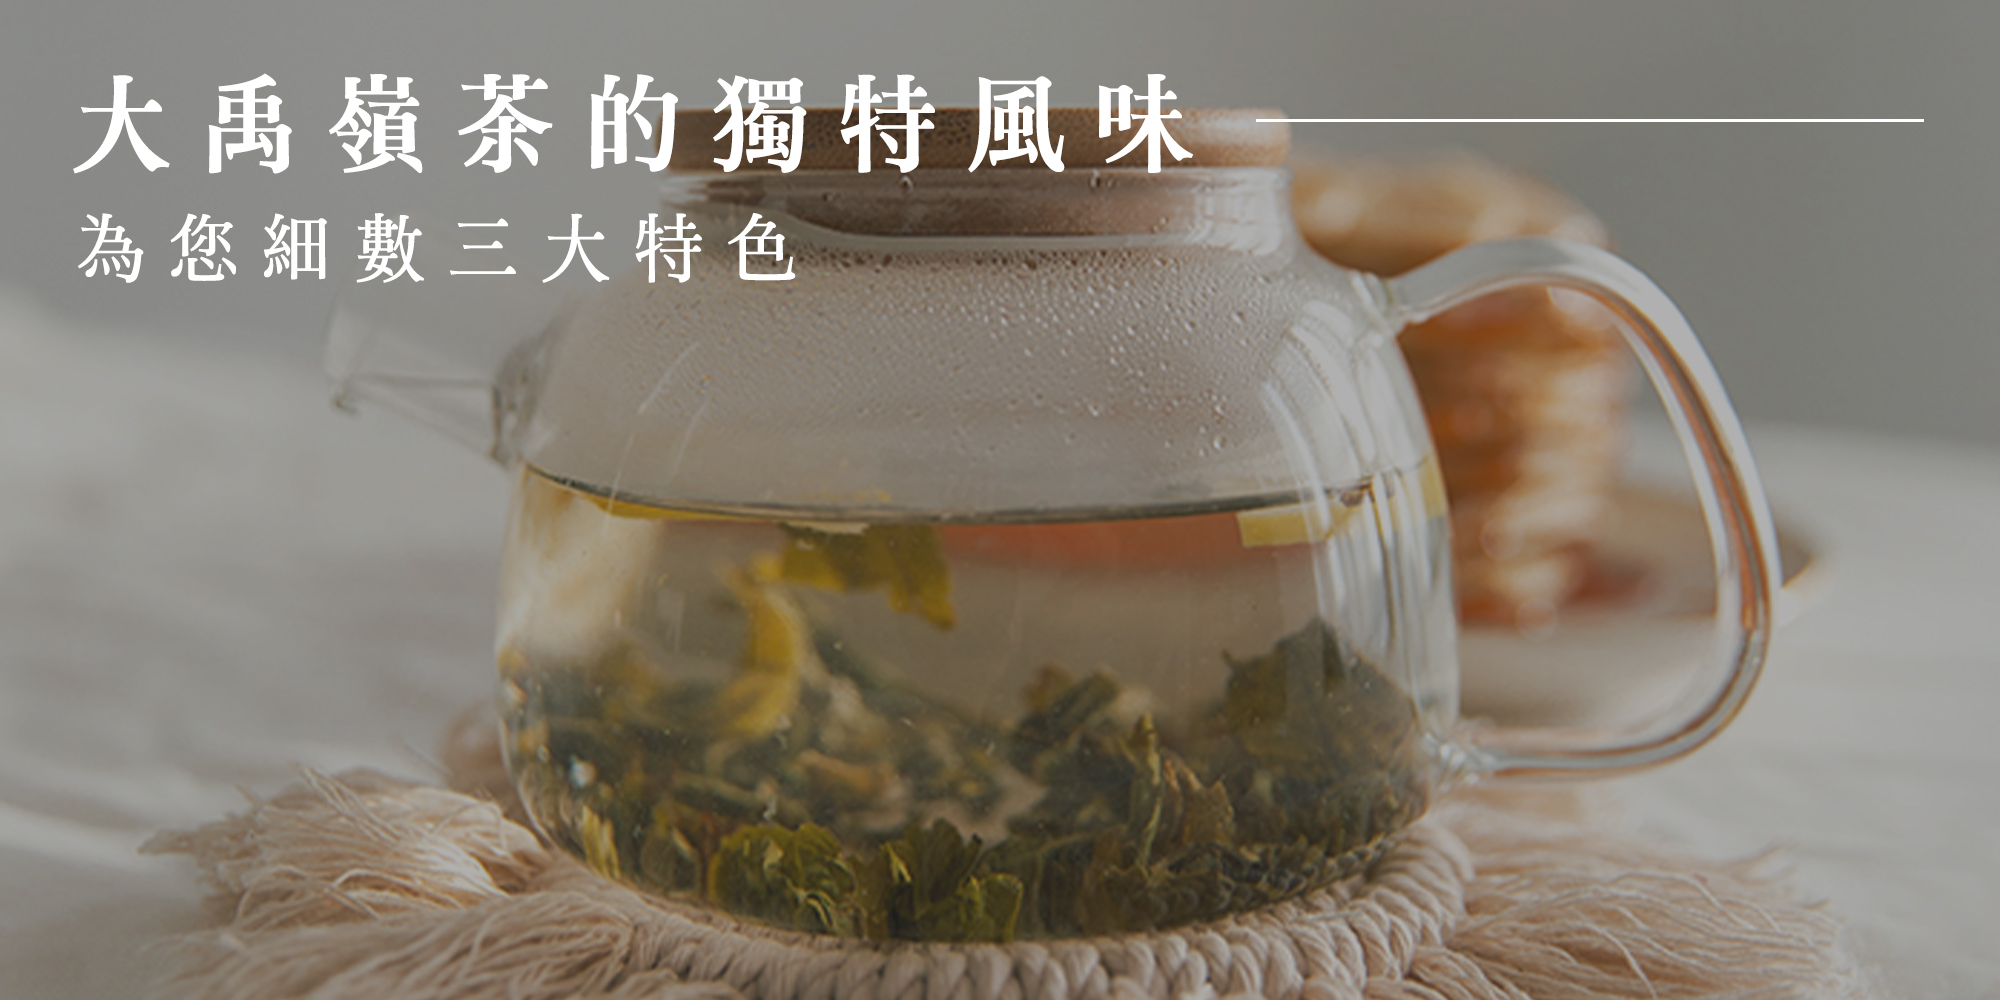 大禹嶺茶的獨特風味和3大特色
